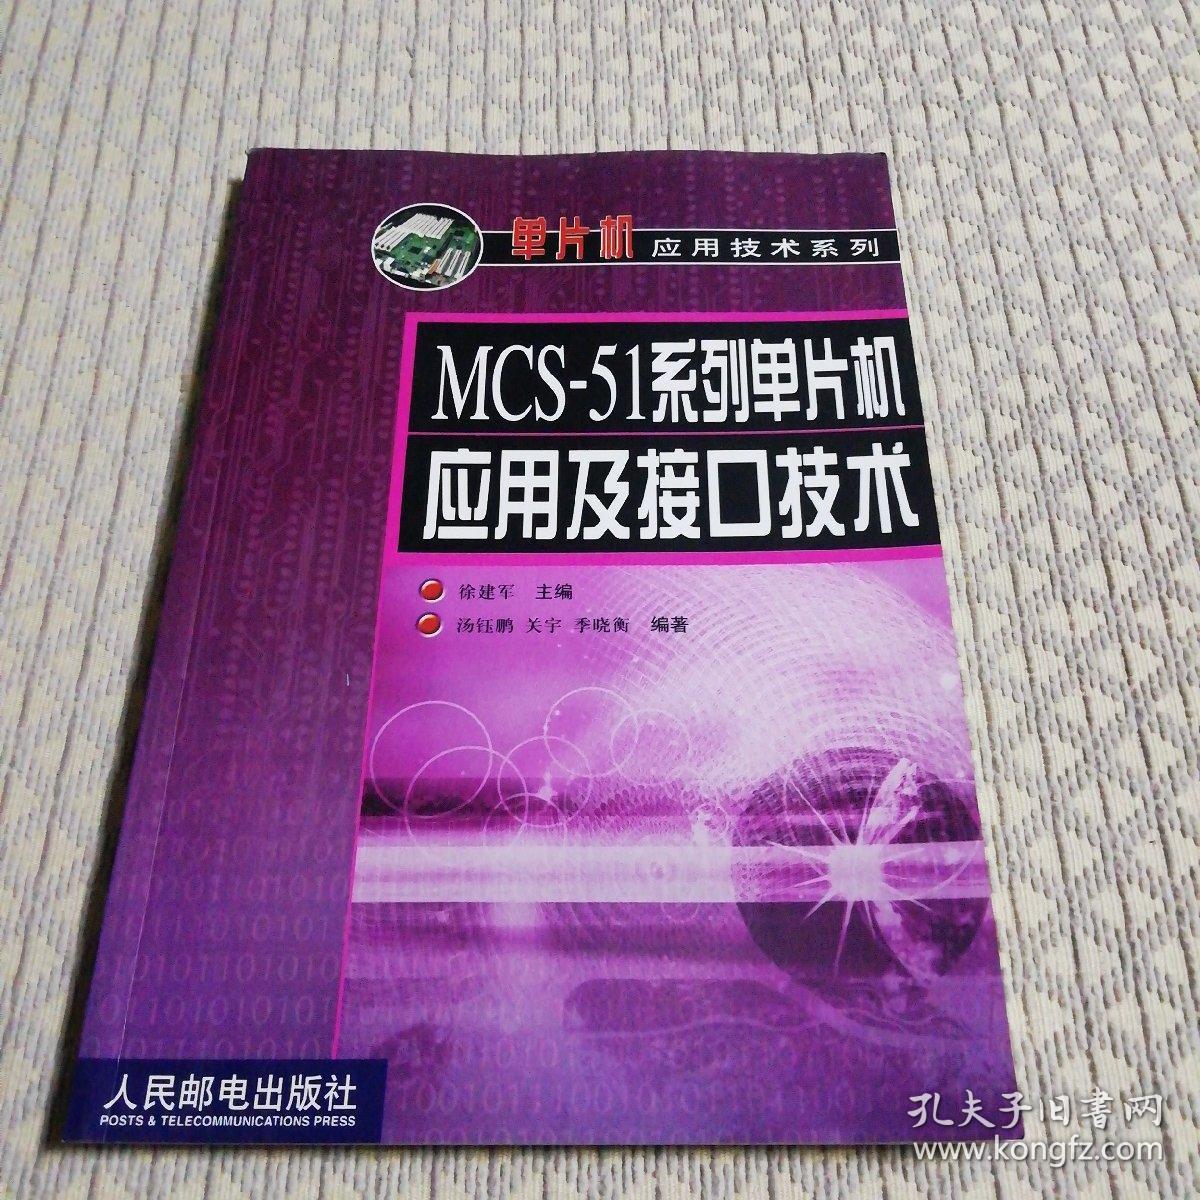 MCS-51系列单片机应用及接口技术